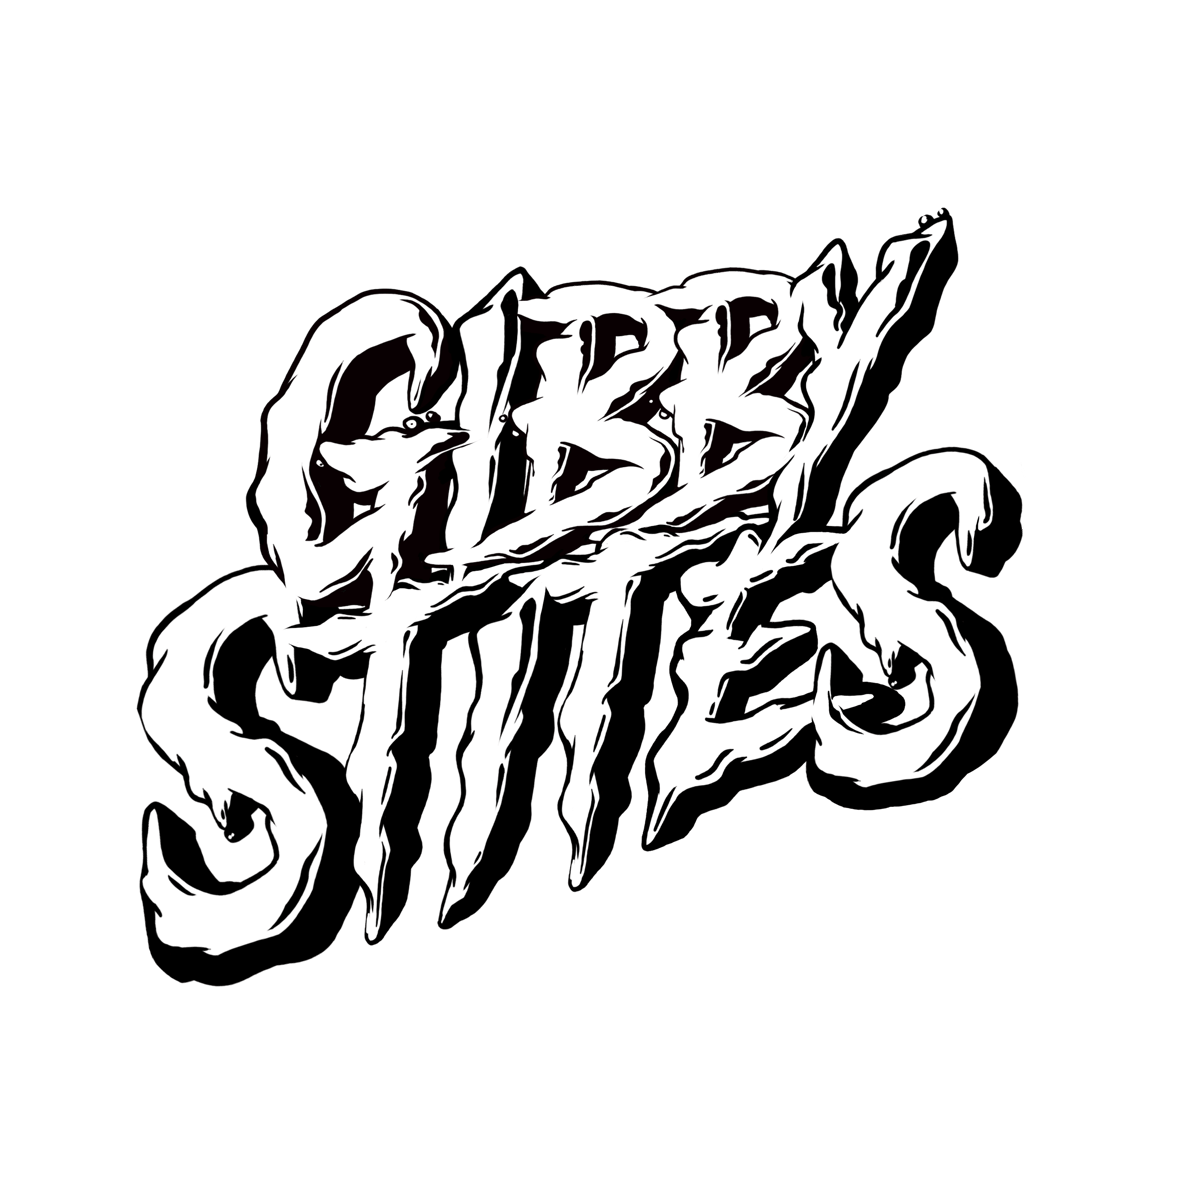 Gibby Stites